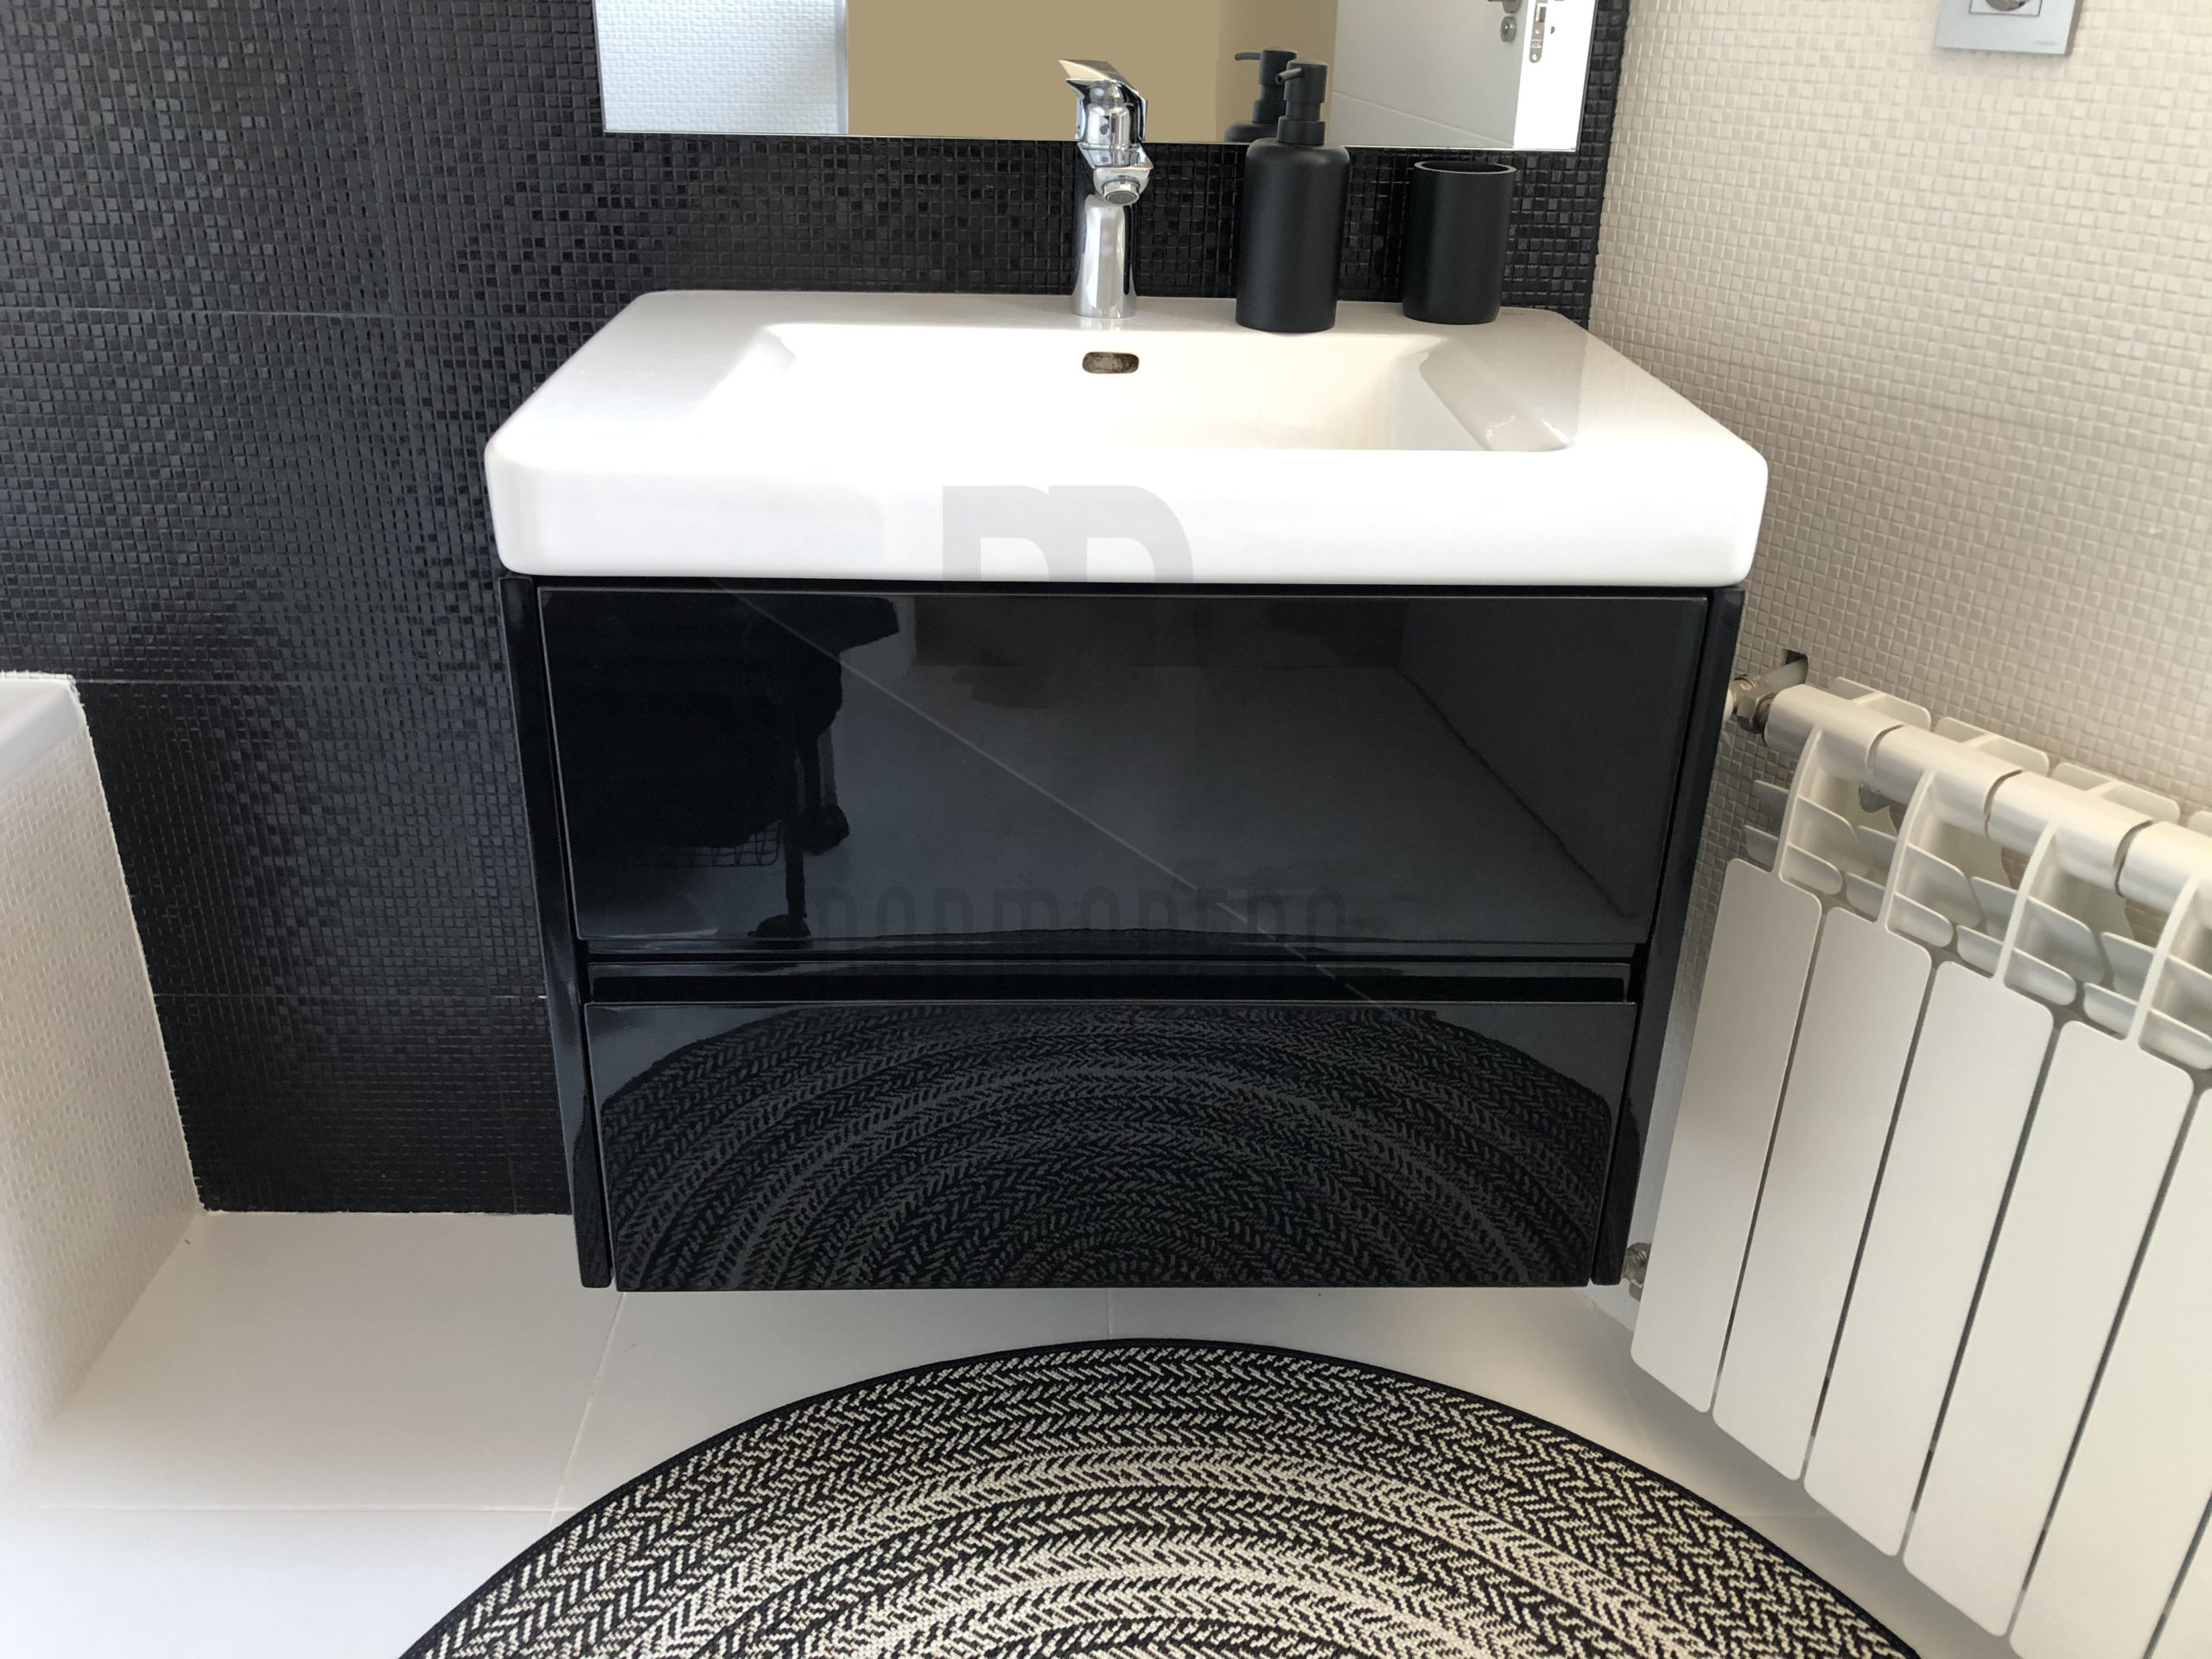 Mueble de baño lacado en negro ultra brillo.